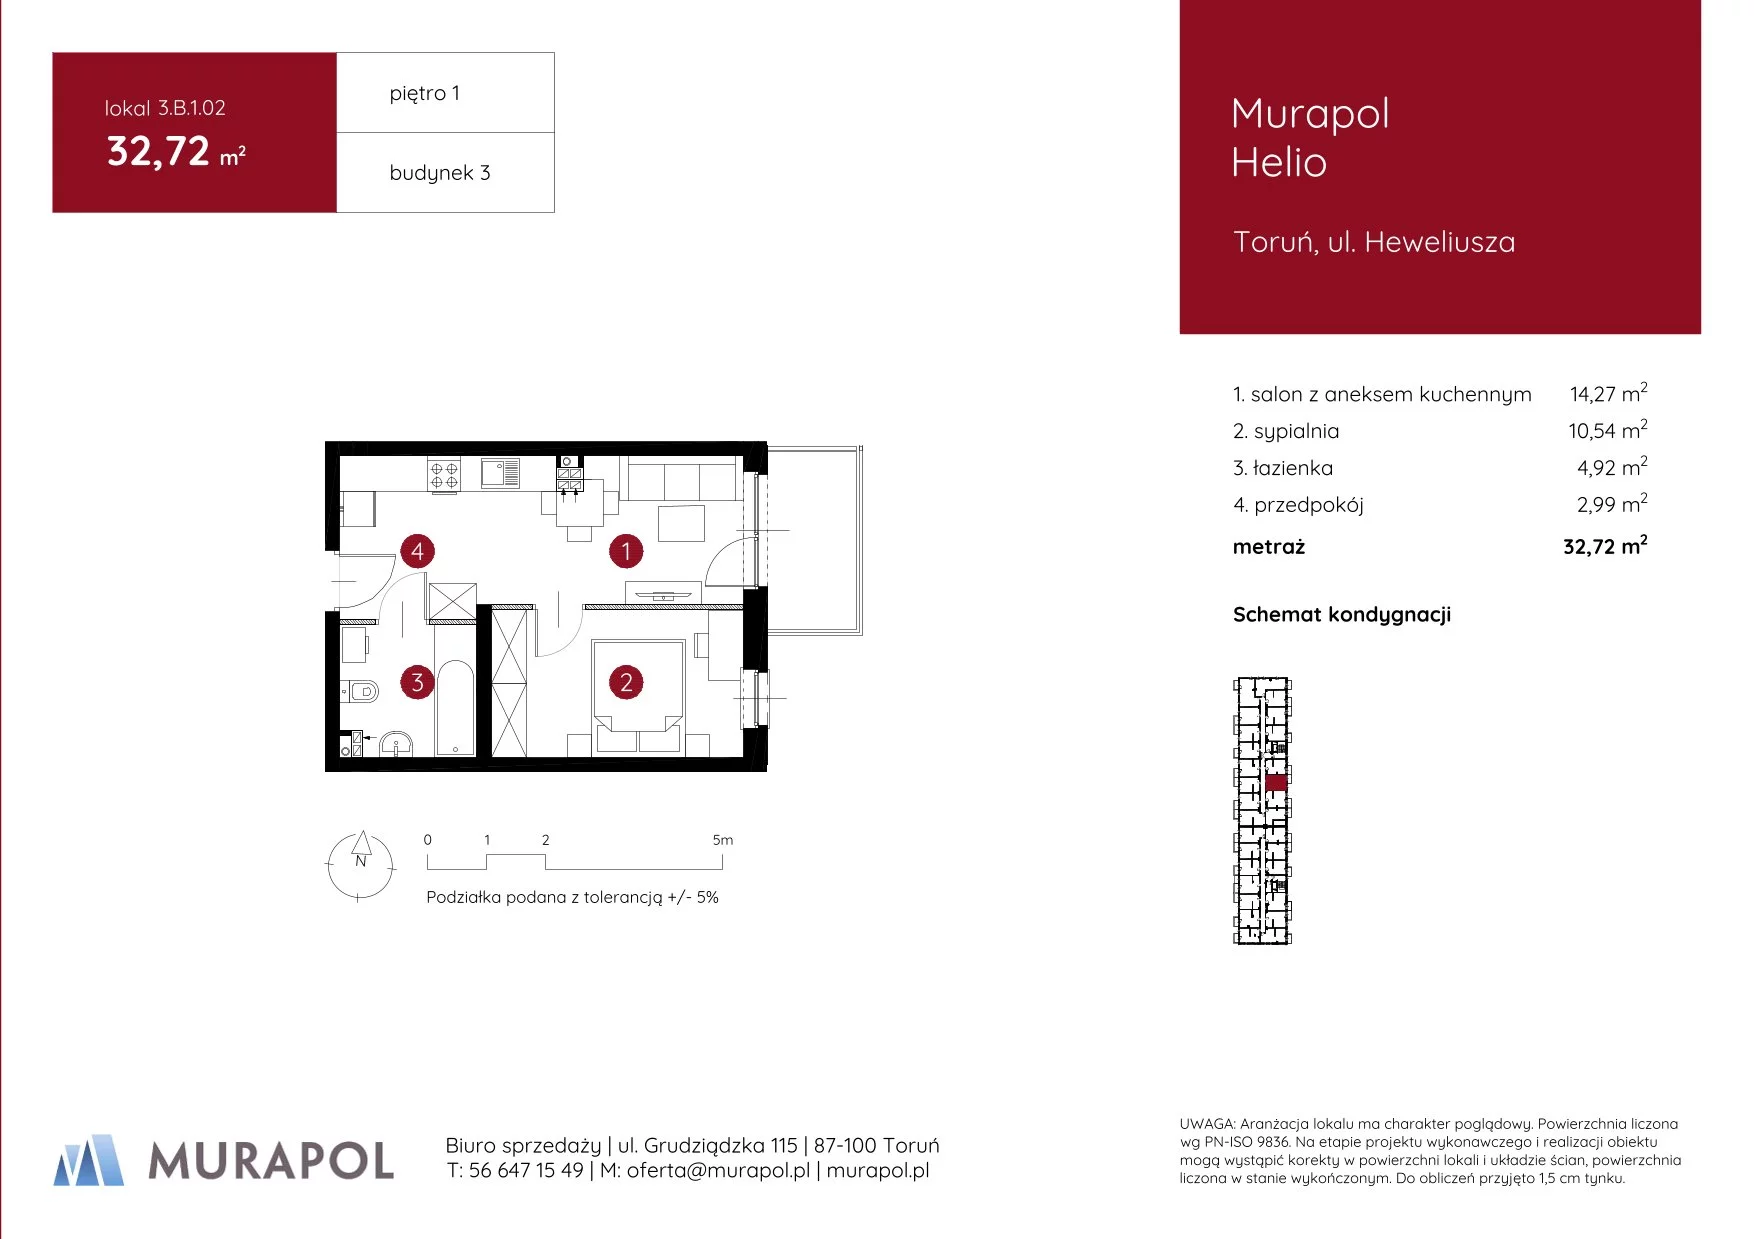 Mieszkanie 32,72 m², piętro 1, oferta nr 3.B.1.02, Murapol Helio, Toruń, Wrzosy, JAR, ul. Heweliusza